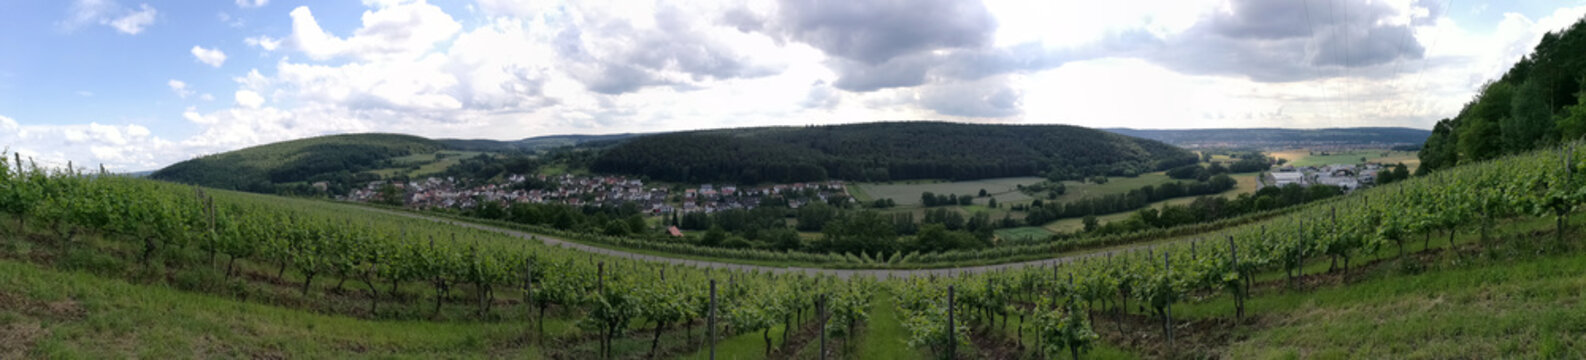 Panoramablick über Weinberg von Elsenfeld Rück in Unterfranken